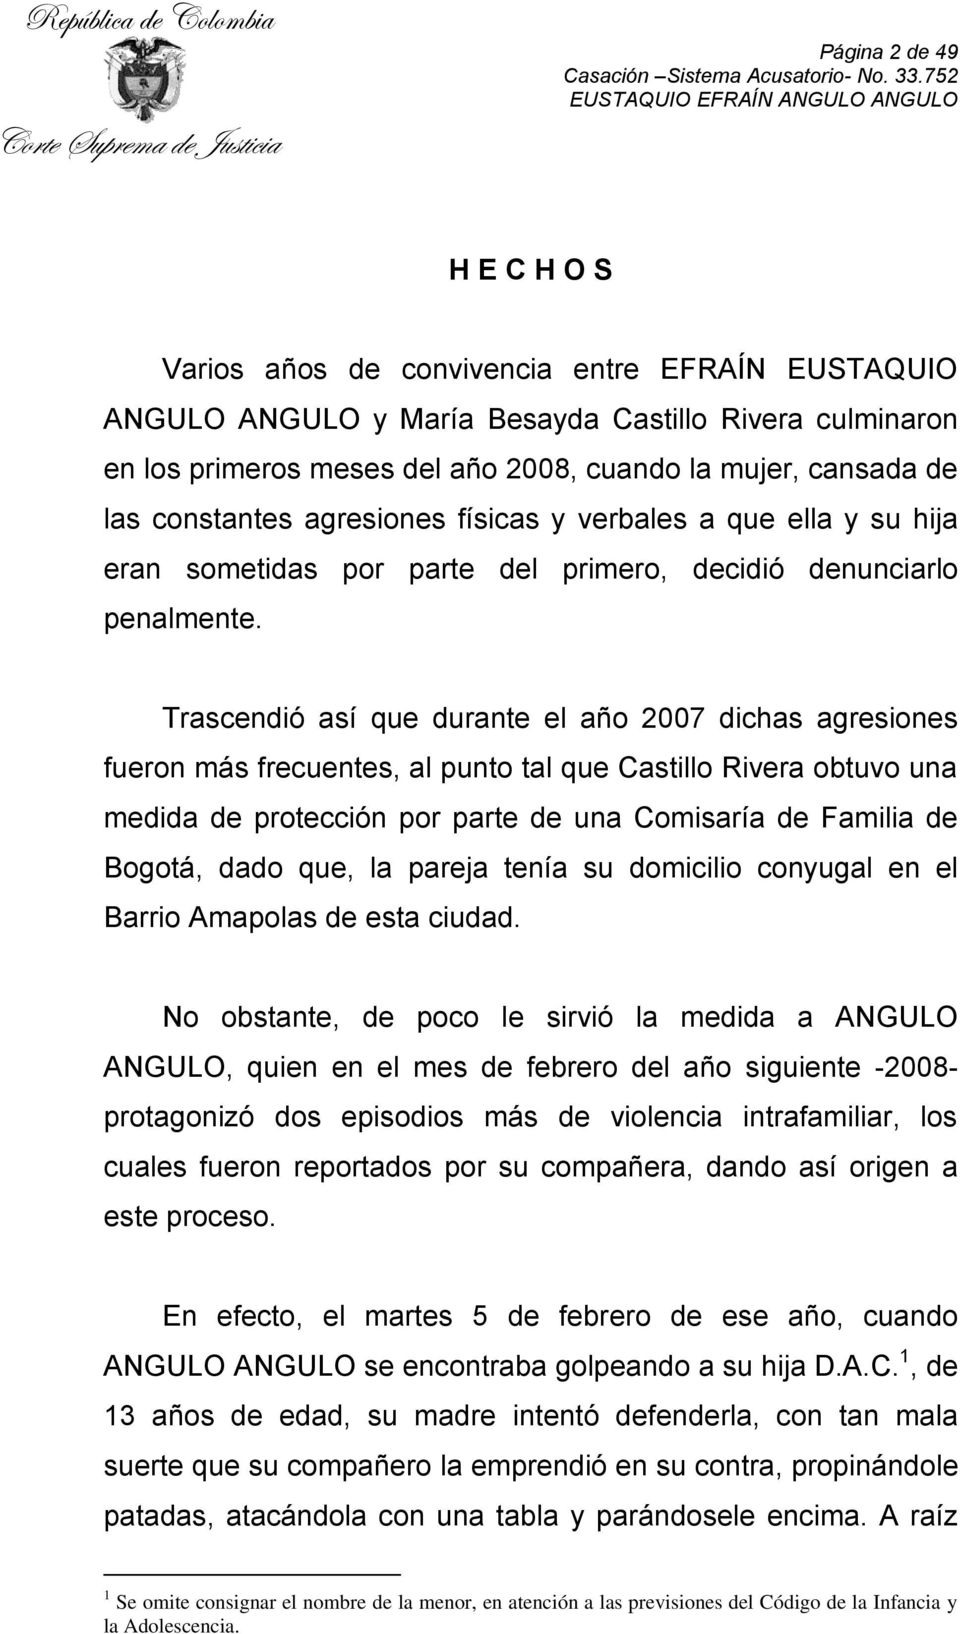 Trascendió así que durante el año 2007 dichas agresiones fueron más frecuentes, al punto tal que Castillo Rivera obtuvo una medida de protección por parte de una Comisaría de Familia de Bogotá, dado